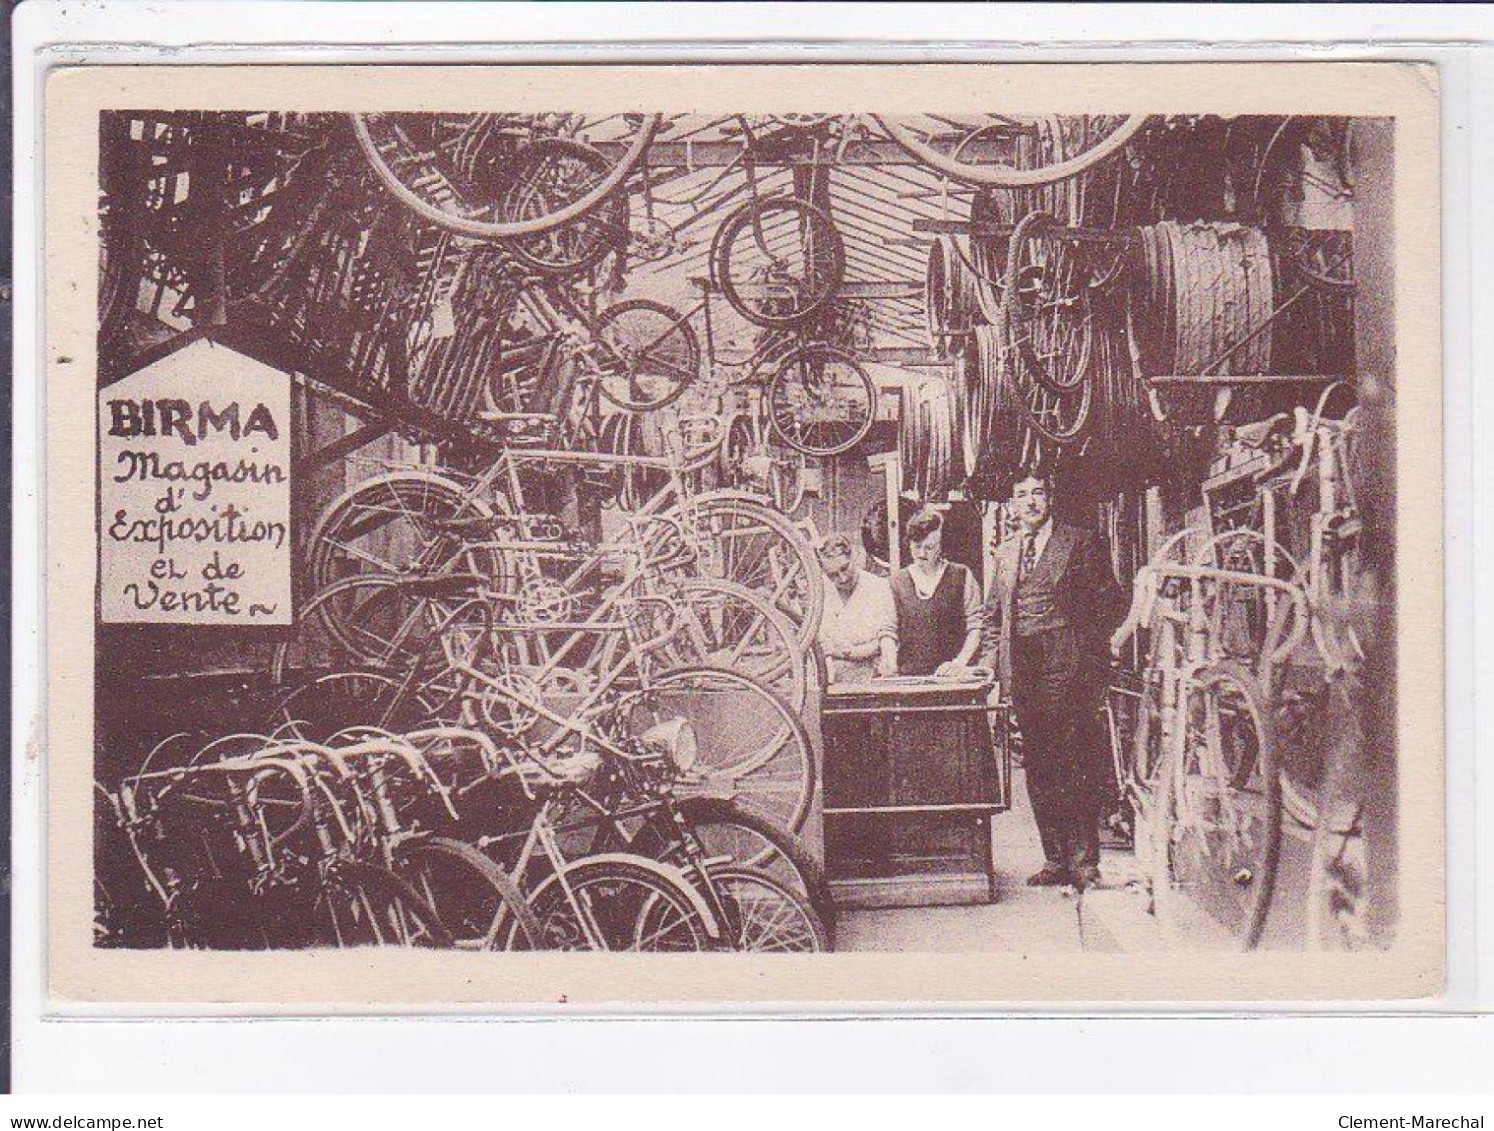 SAINT-MANDE: Cycles Birma, Magasin D'exposition Et De Vente 65 Rue Jeanne D'Arc (MOTO)- état - Saint Mande